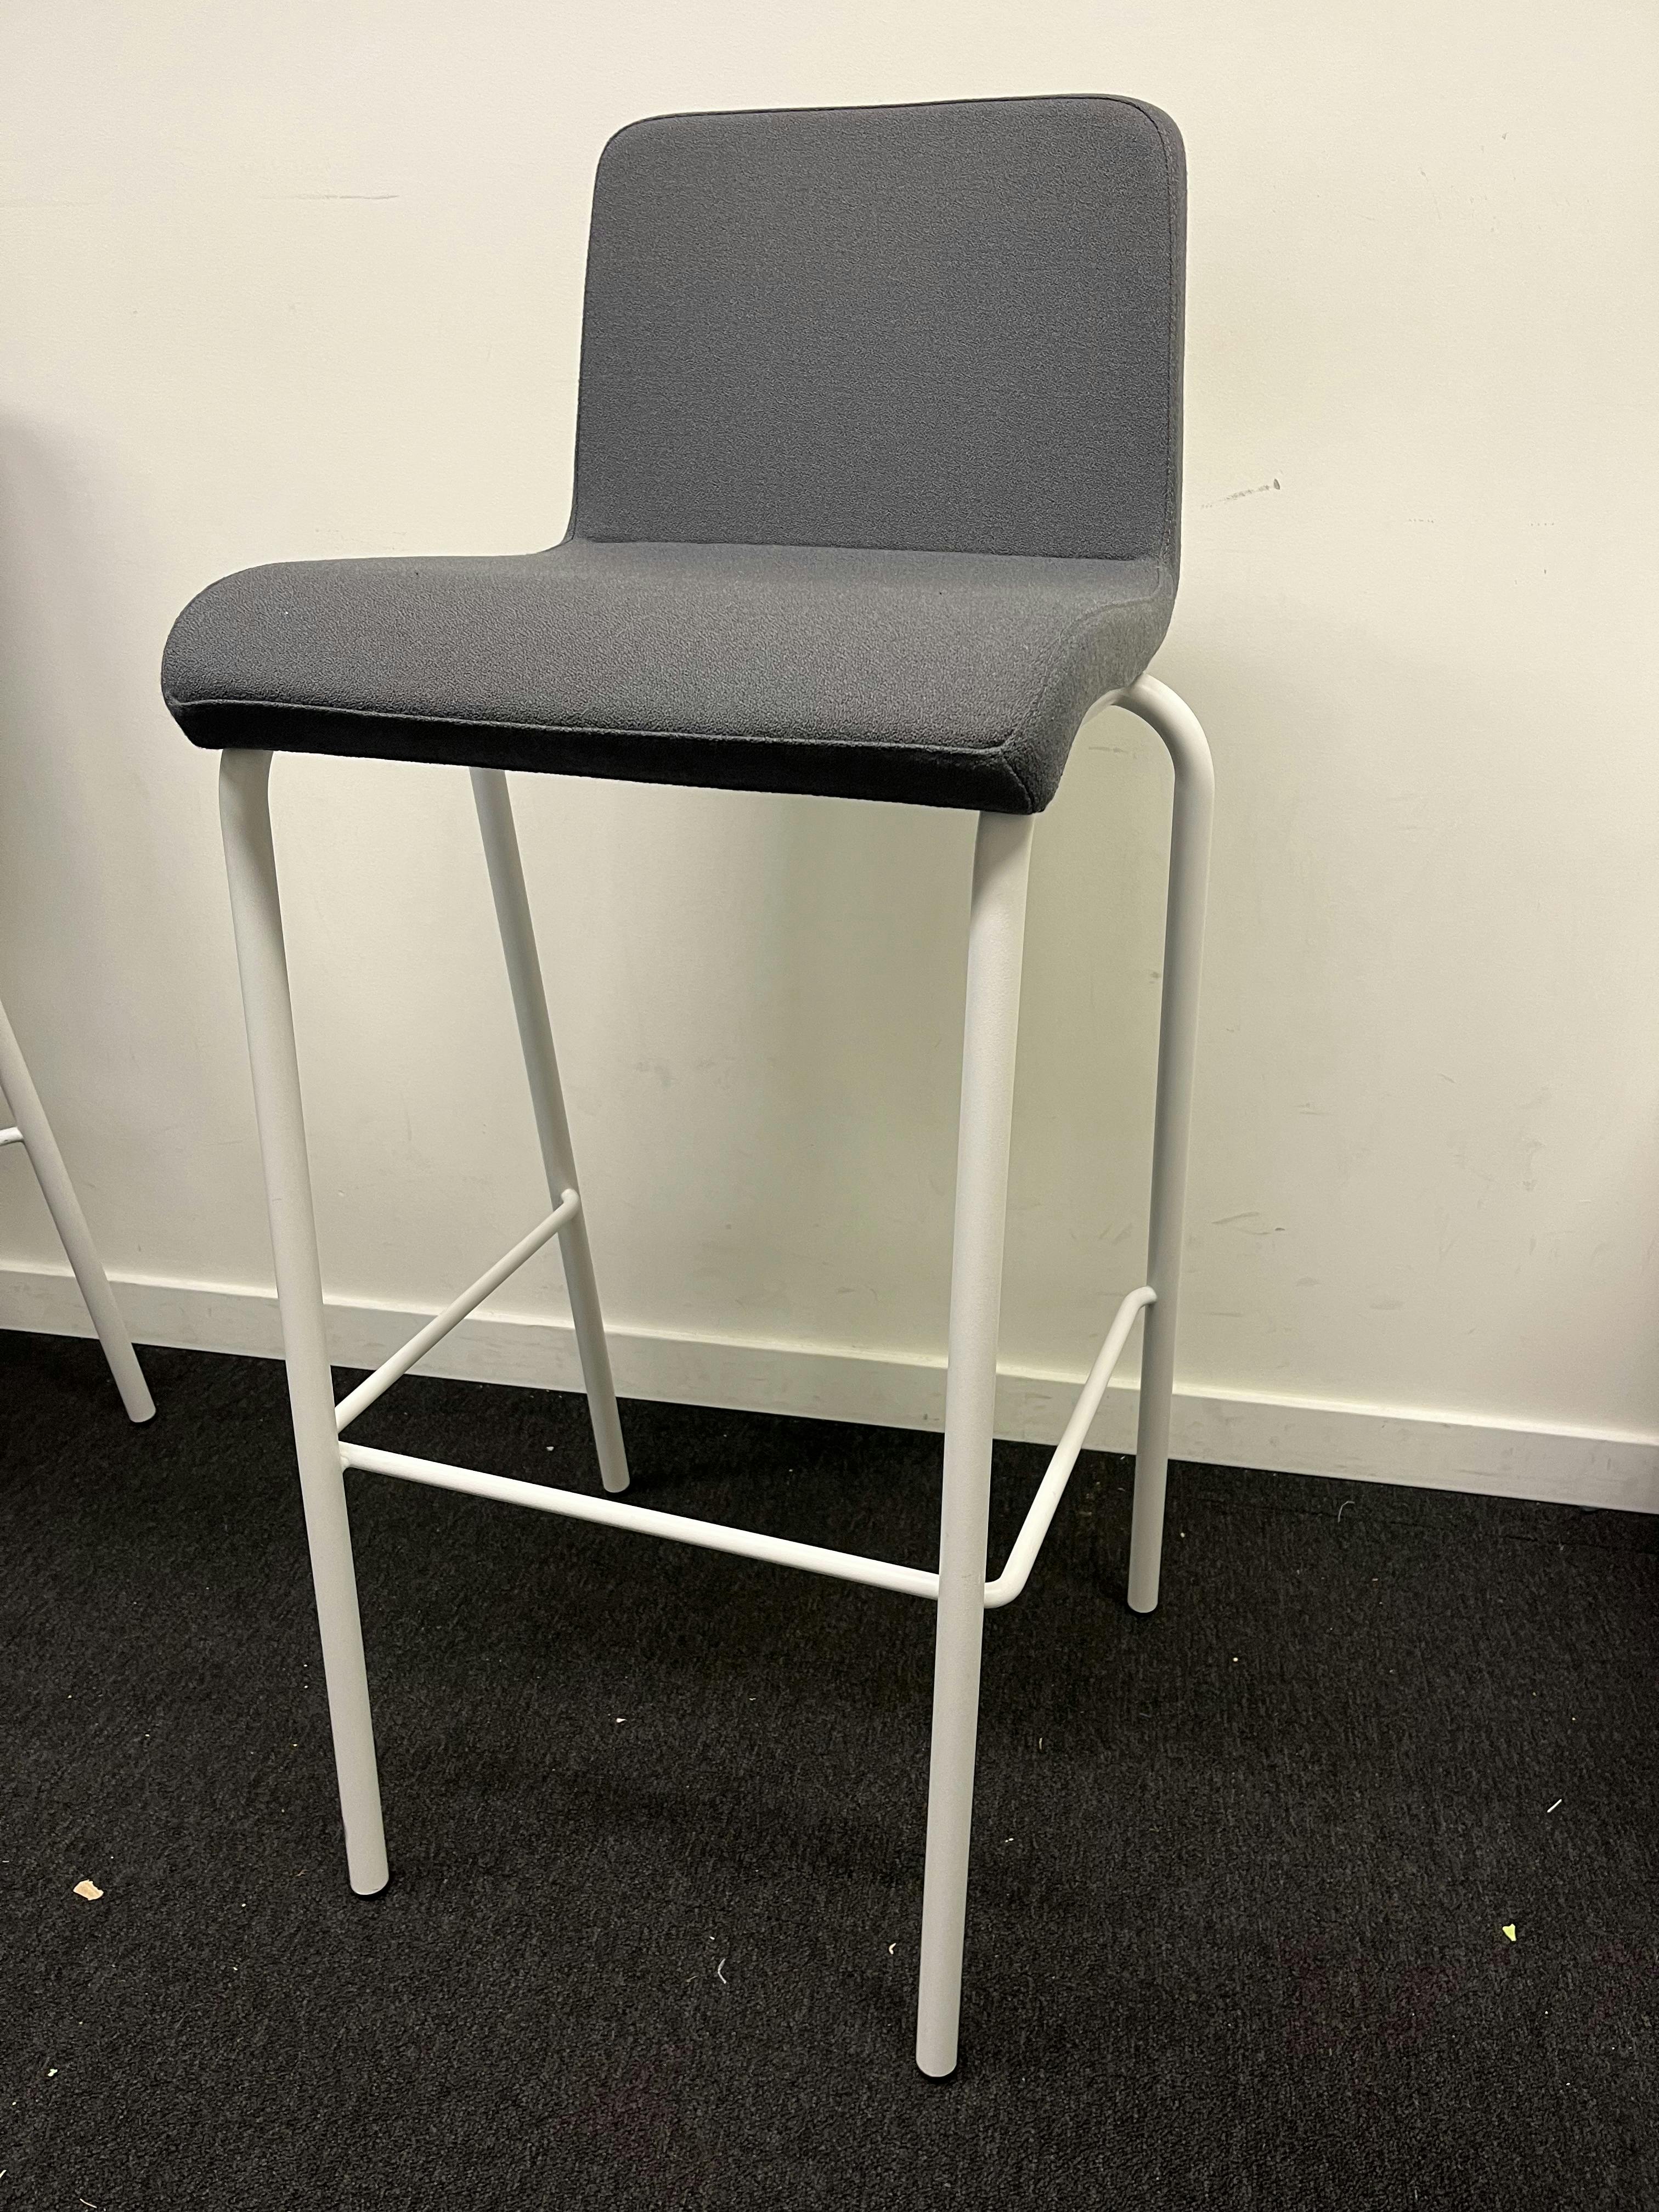 Chaise haute grise sur pieds blancs - Relieve Furniture